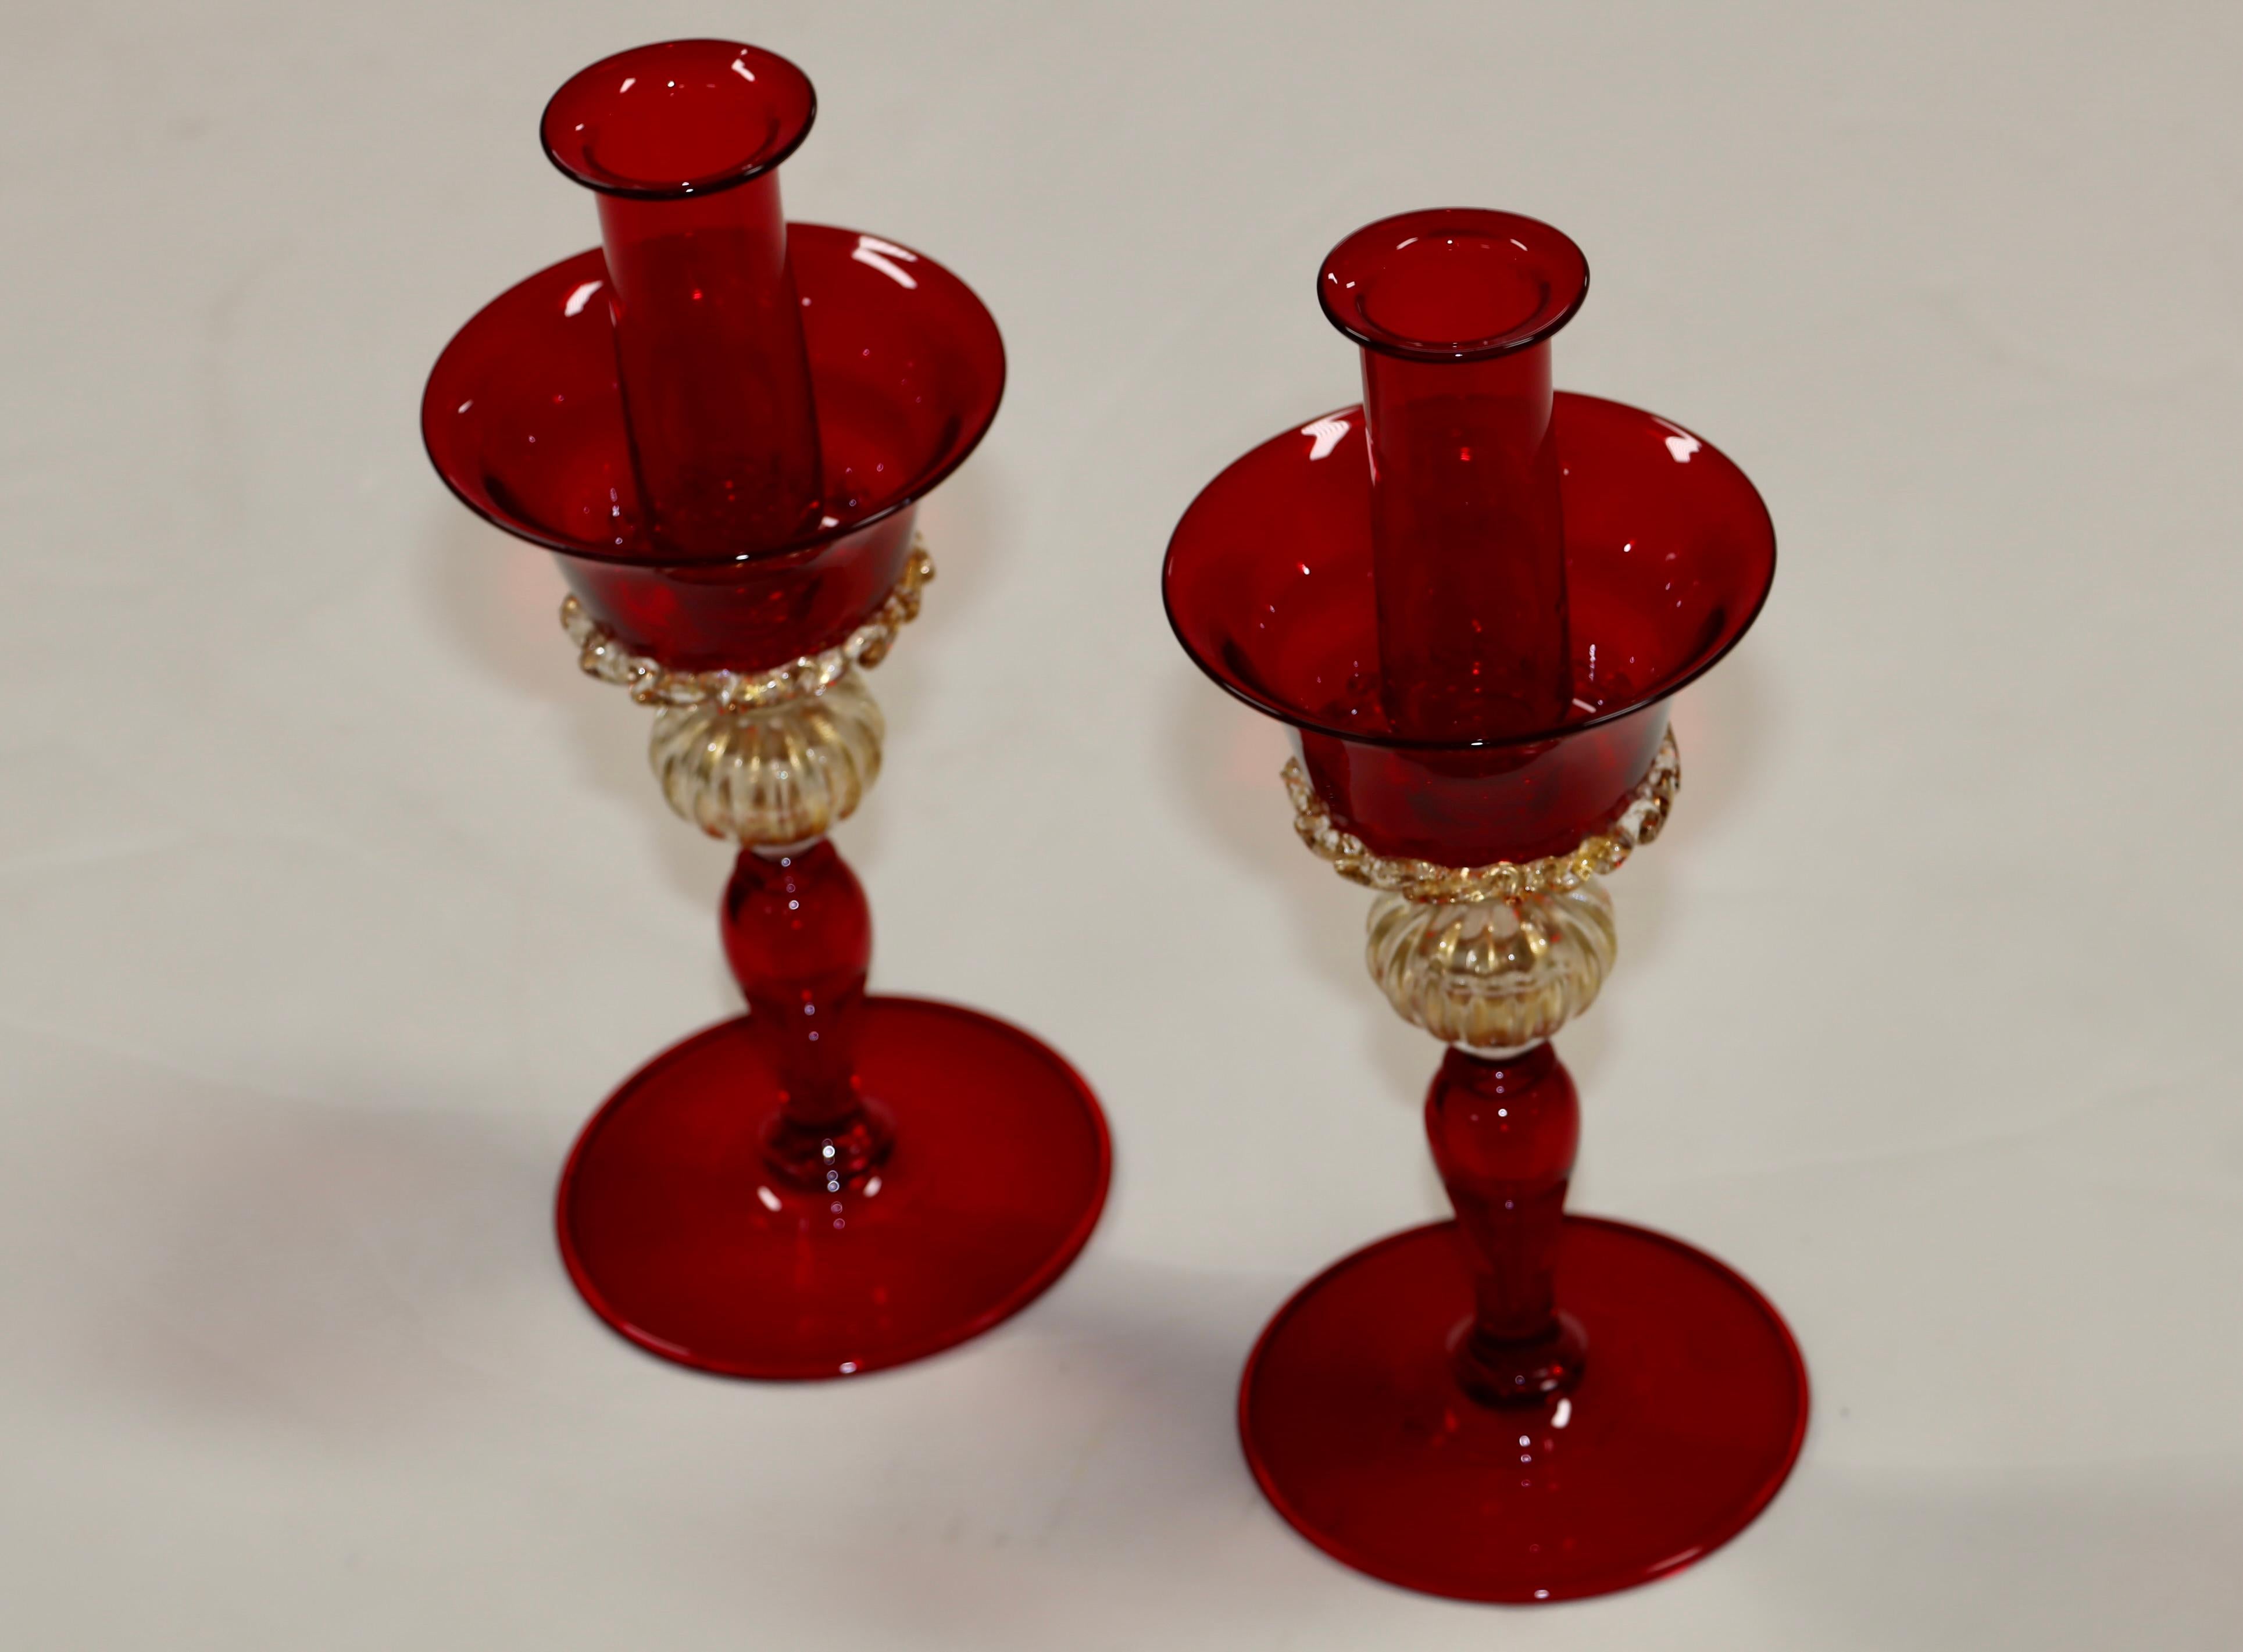 Wunderschönes Paar moderner signierter Murano-Glas-Kerzenhalter in Rot und Gold aus den 1970er Jahren, in originalem Vintage-Zustand mit leichten alters- und gebrauchsbedingten Gebrauchsspuren und Patina.